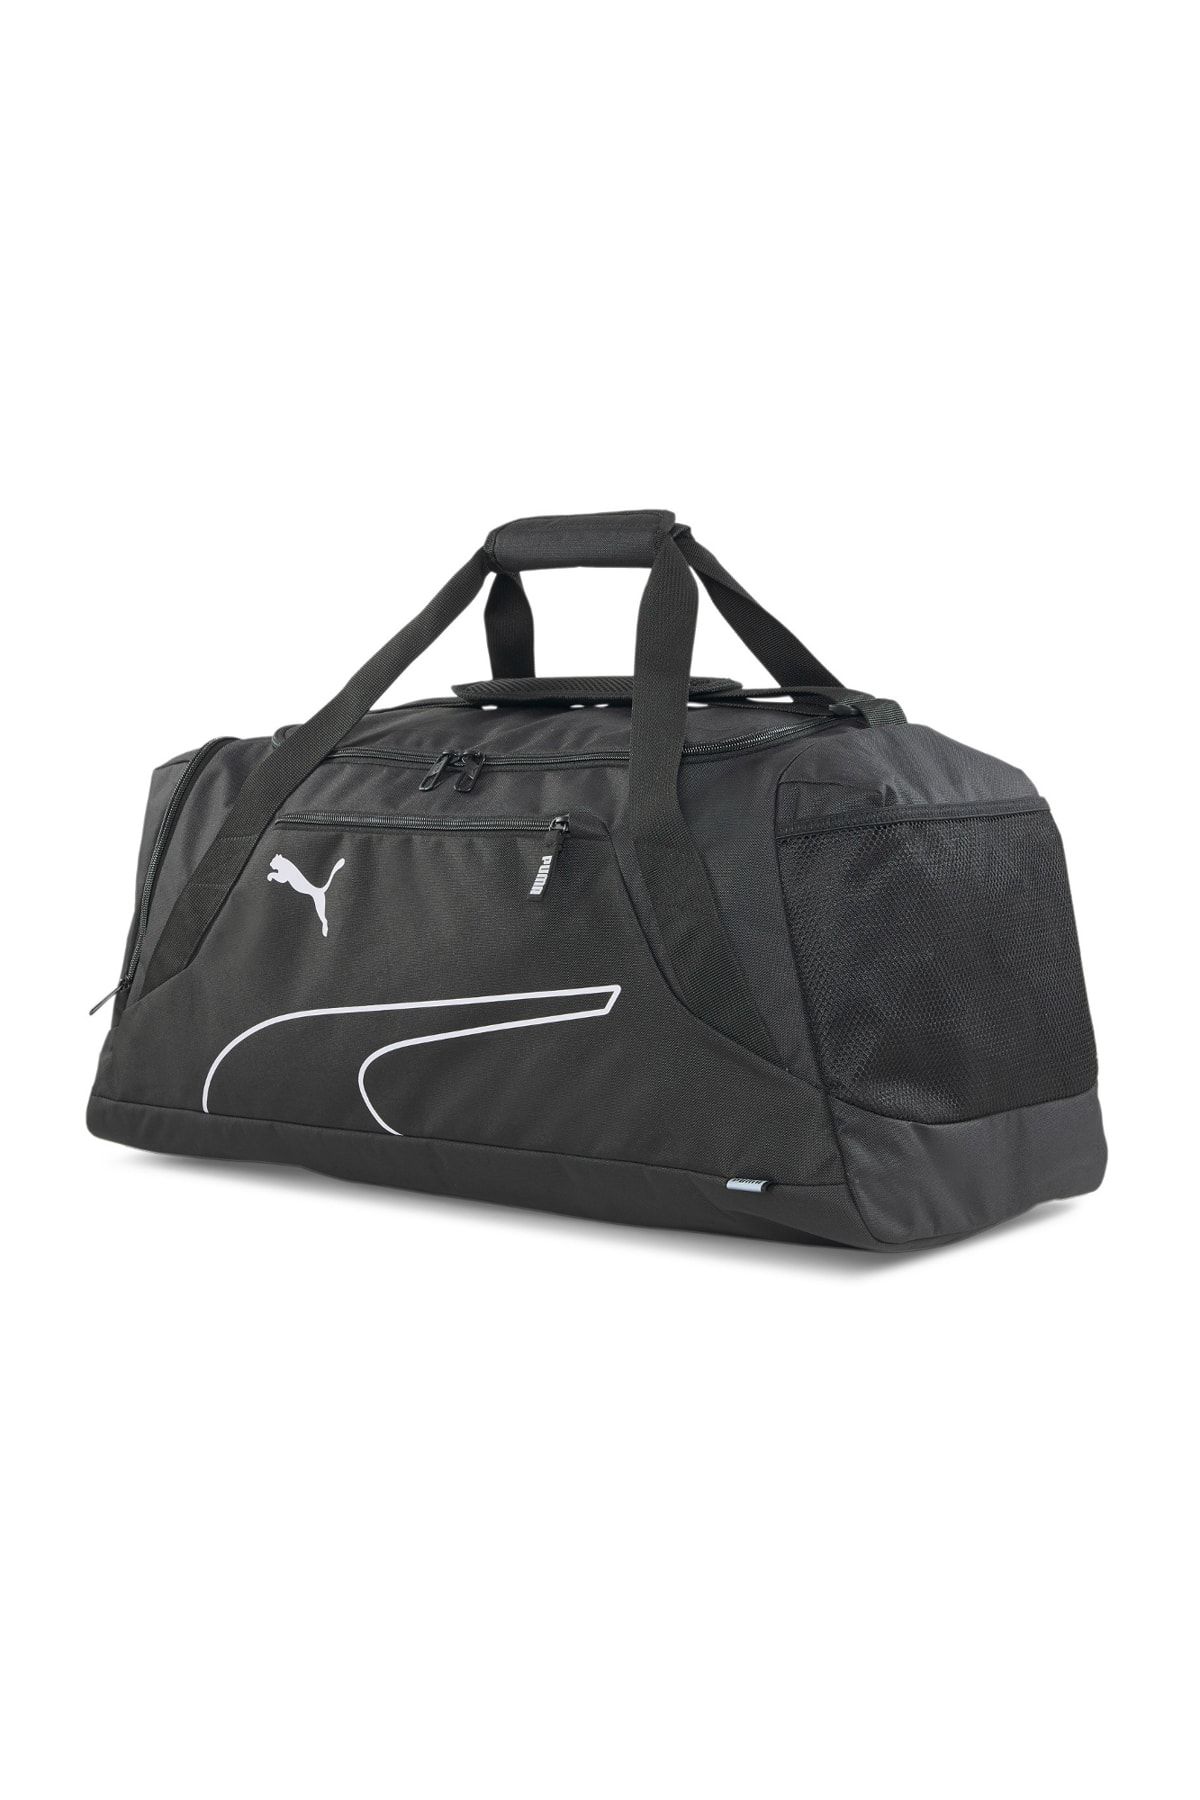 Puma Fundamentals Sports Bag M Black